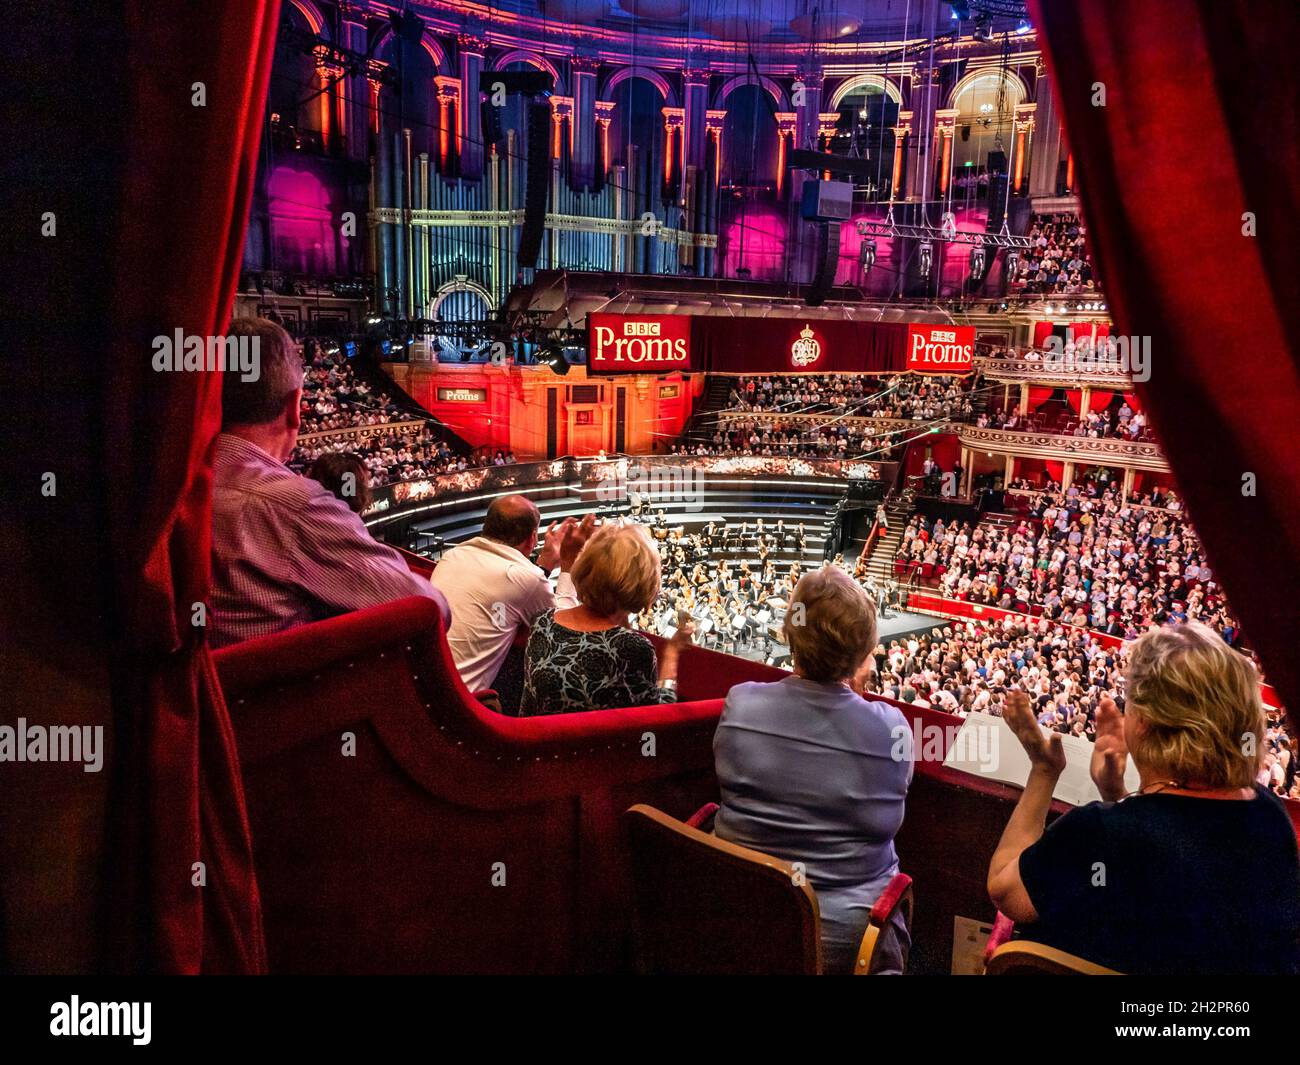 ALBERT HALL APPLAUDIT les performances de BBC PROMS avec le public applaudissant la vue en hauteur, de la boîte privée en velours rouge de luxe au public et à la scène d'orchestre dais derrière Londres Royaume-Uni Banque D'Images